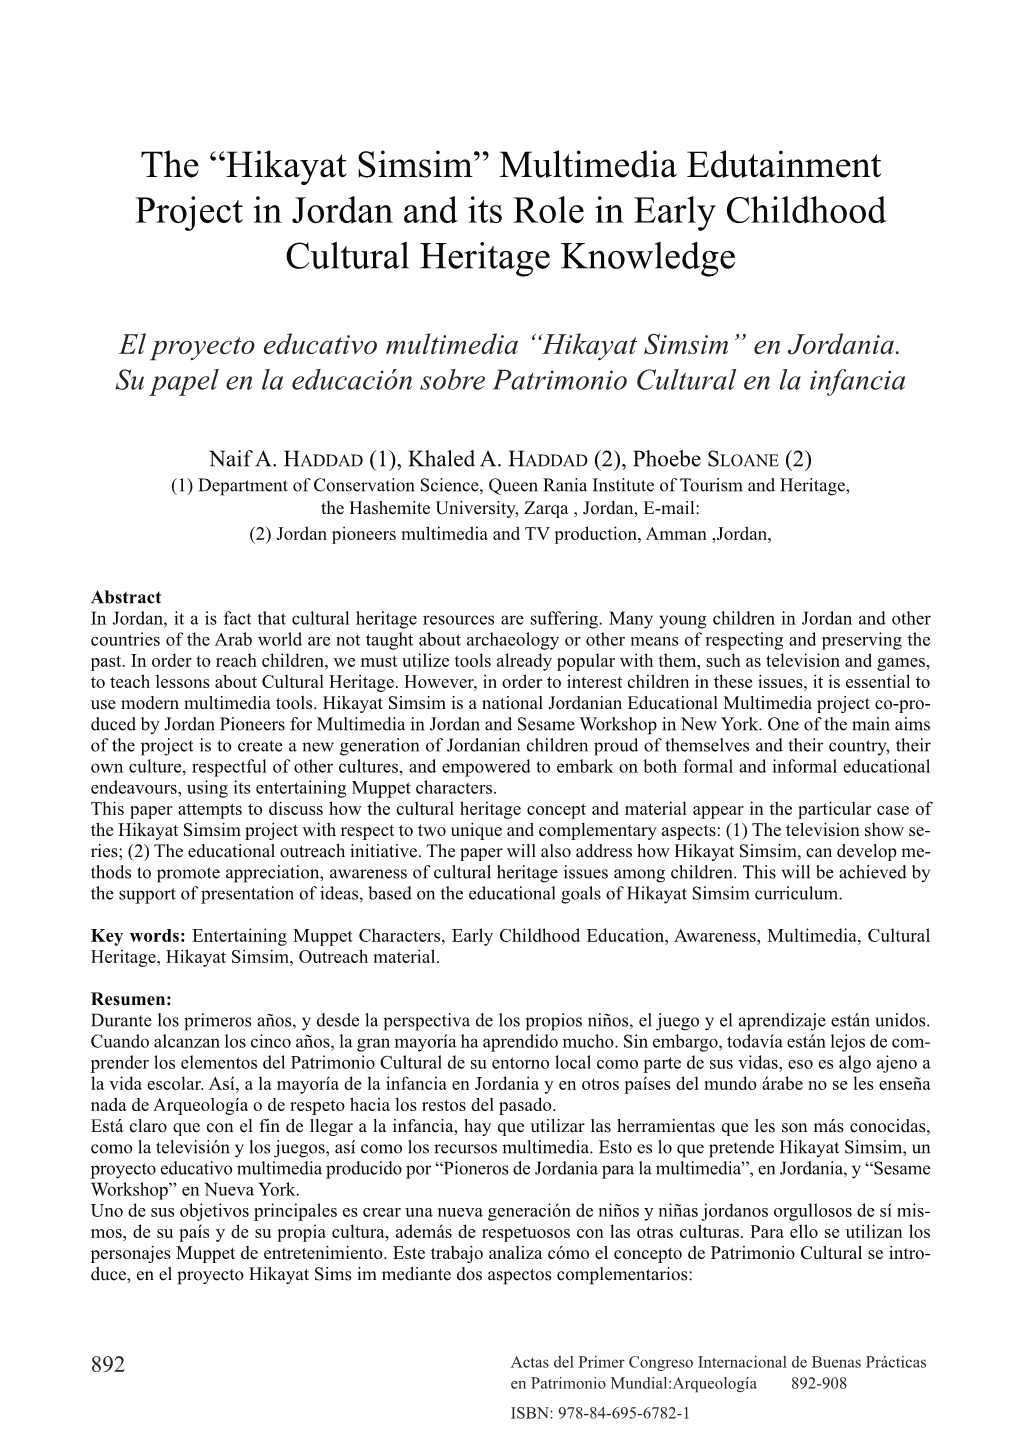 Actas Del Primer Congreso Internacional De Buenas Prácticas En Patrimonio Mundial: Arqueología